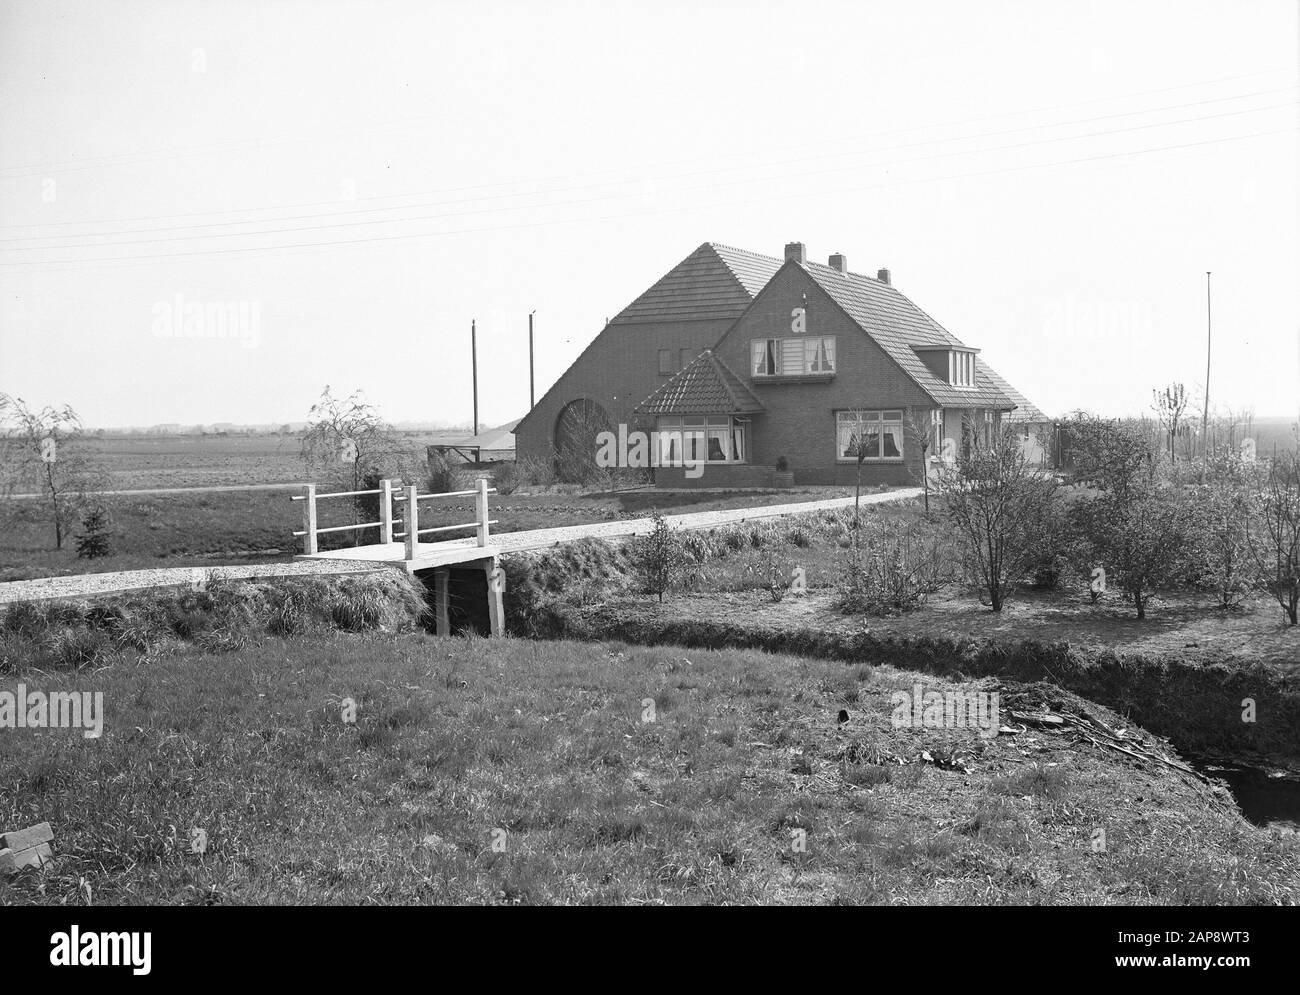 Ferme De Eersteling À Bergentheimerveen. Aussi appelé l'annotation de l'équipe d'or: La première ferme assez grande qui a été construite sur le terrain de la vallée de Bergentheim, est la ferme dans laquelle la famille Staarman a vécu pendant des années, sur la Boerendijk. Vers 1910, un sol tourbé complexe a été extrait par la Nederlandsche Heidemaatschappij pour un certain J.B. van Hall de Hattem et, plus tard, une ferme coloniale tourbée a été construite sur elle. Cette ferme a été appelée de Eersteling; dans les archives de la N.H.M. également appelé de Gouden Ploeg, nommé d'après la région. Date: Non daté lieu: Bergentheimerveen mots clés: Fermes, bâtiments Banque D'Images